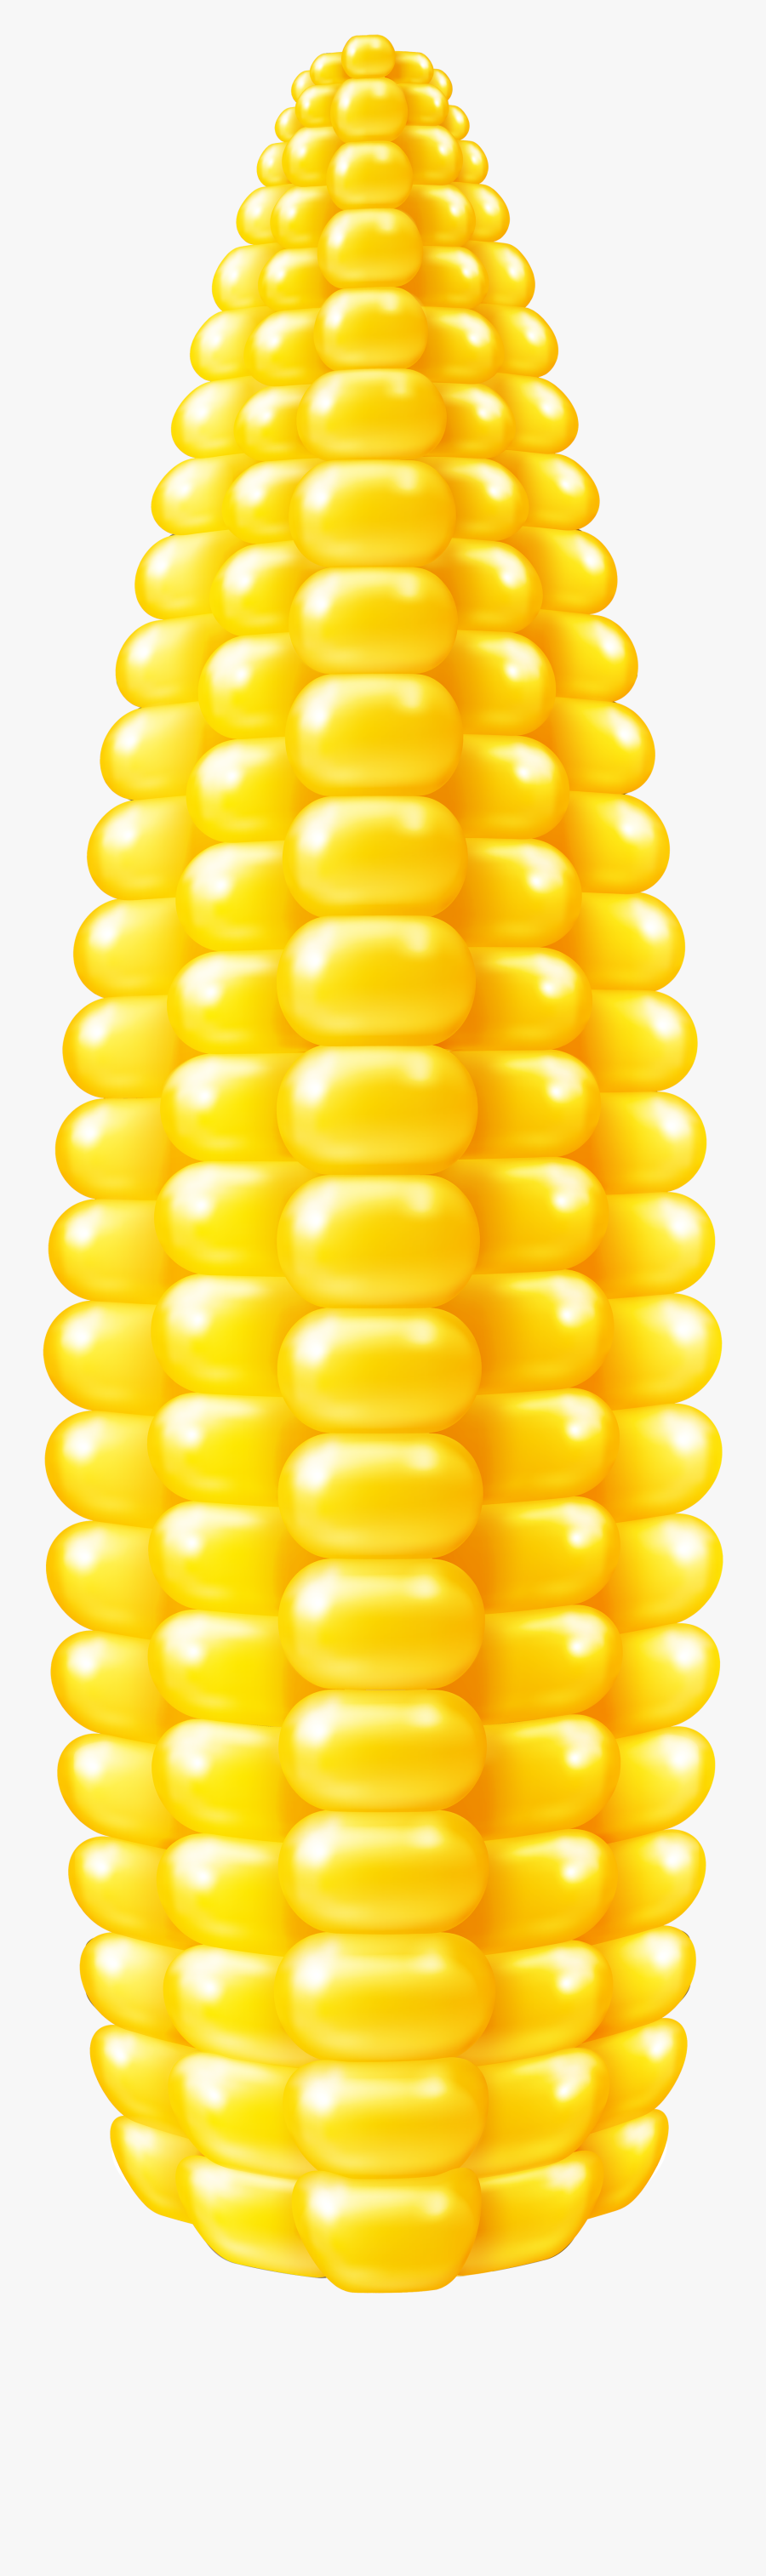 Png Clip Art Image - Cartoon Corn On The Cob Clipart, Transparent Clipart